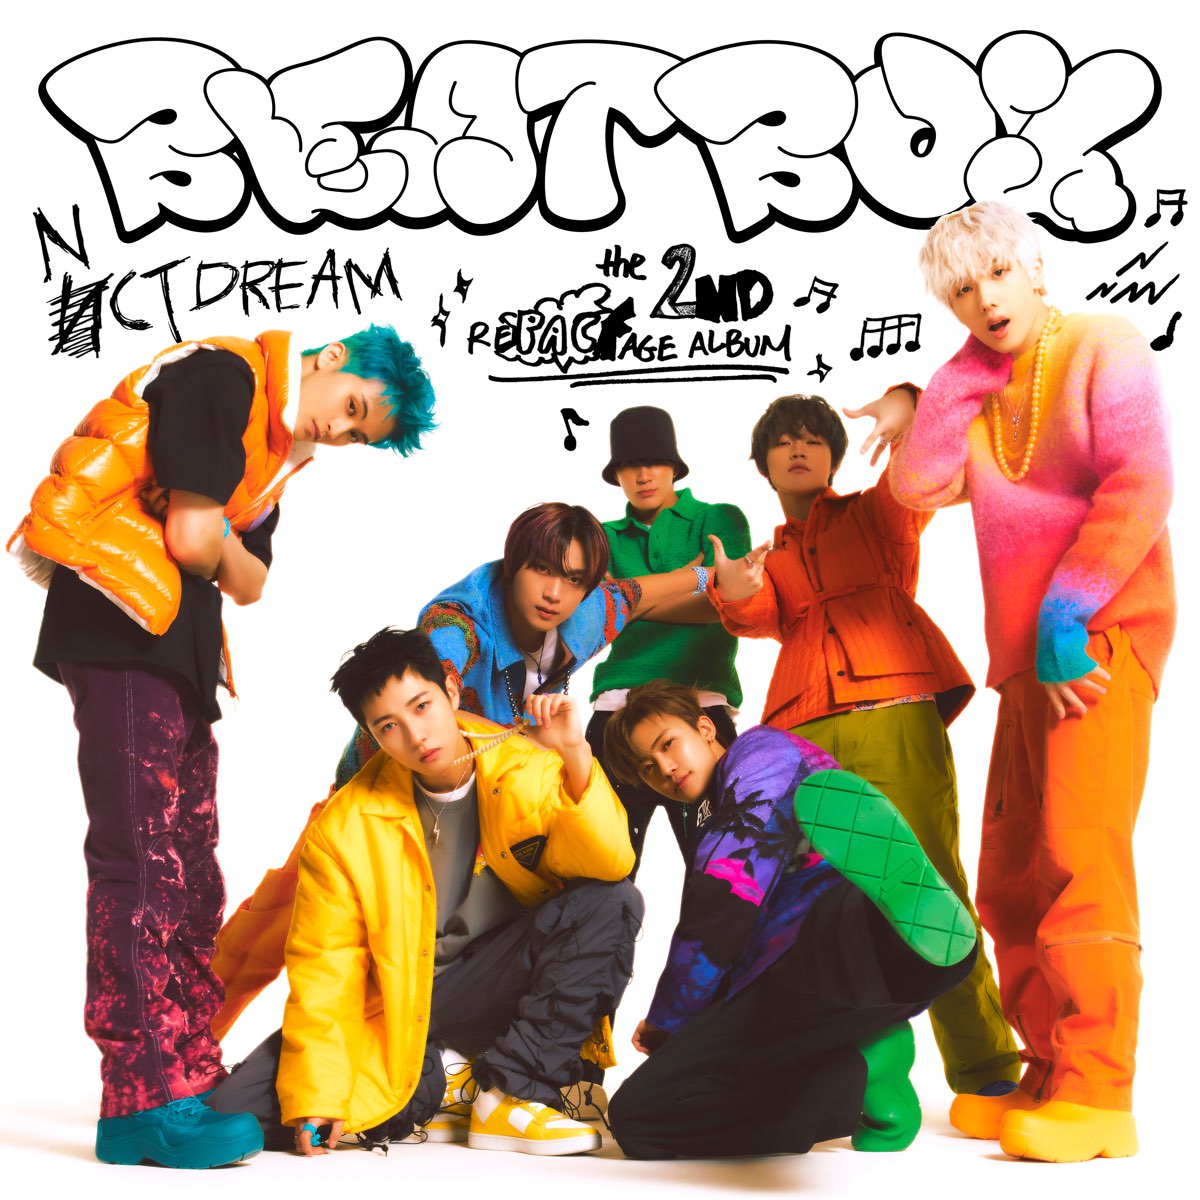 ‎Beatbox - The 2nd Album Repackage (Extended Version) de NCT DREAM en ...